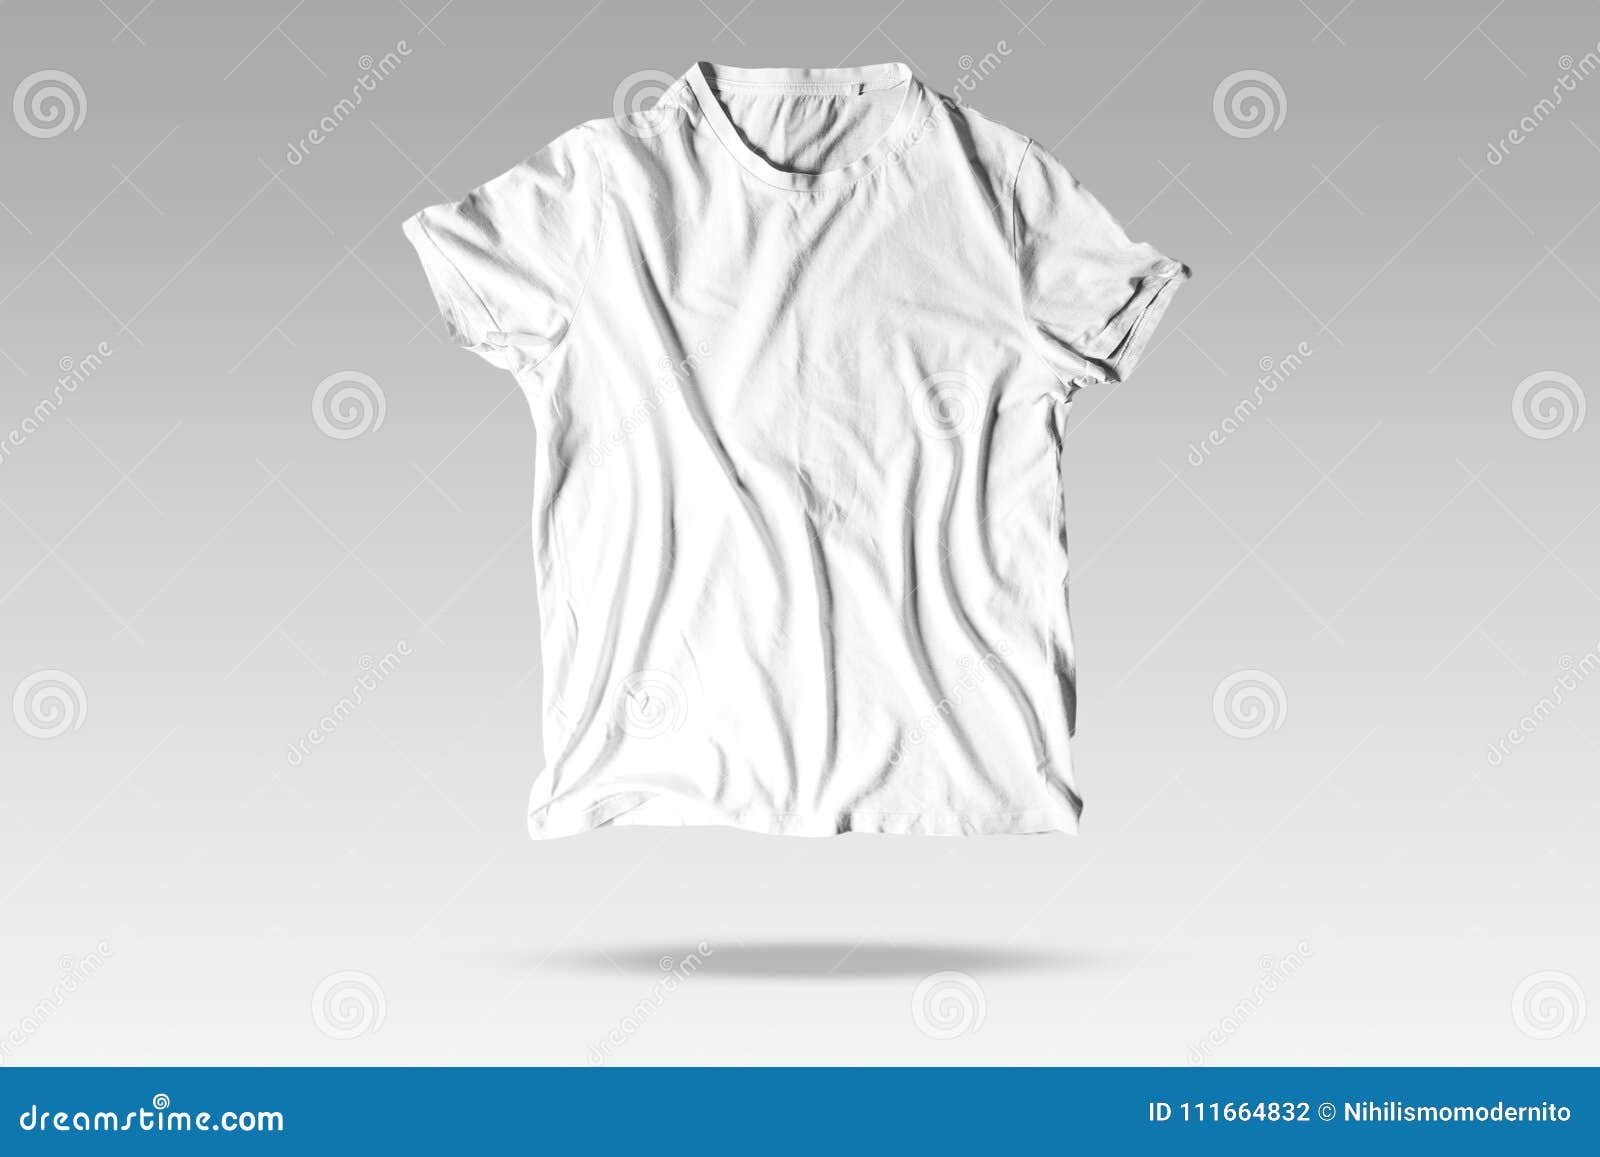 reallistic wrinkles white unisex t-shirt with elegant background mockup